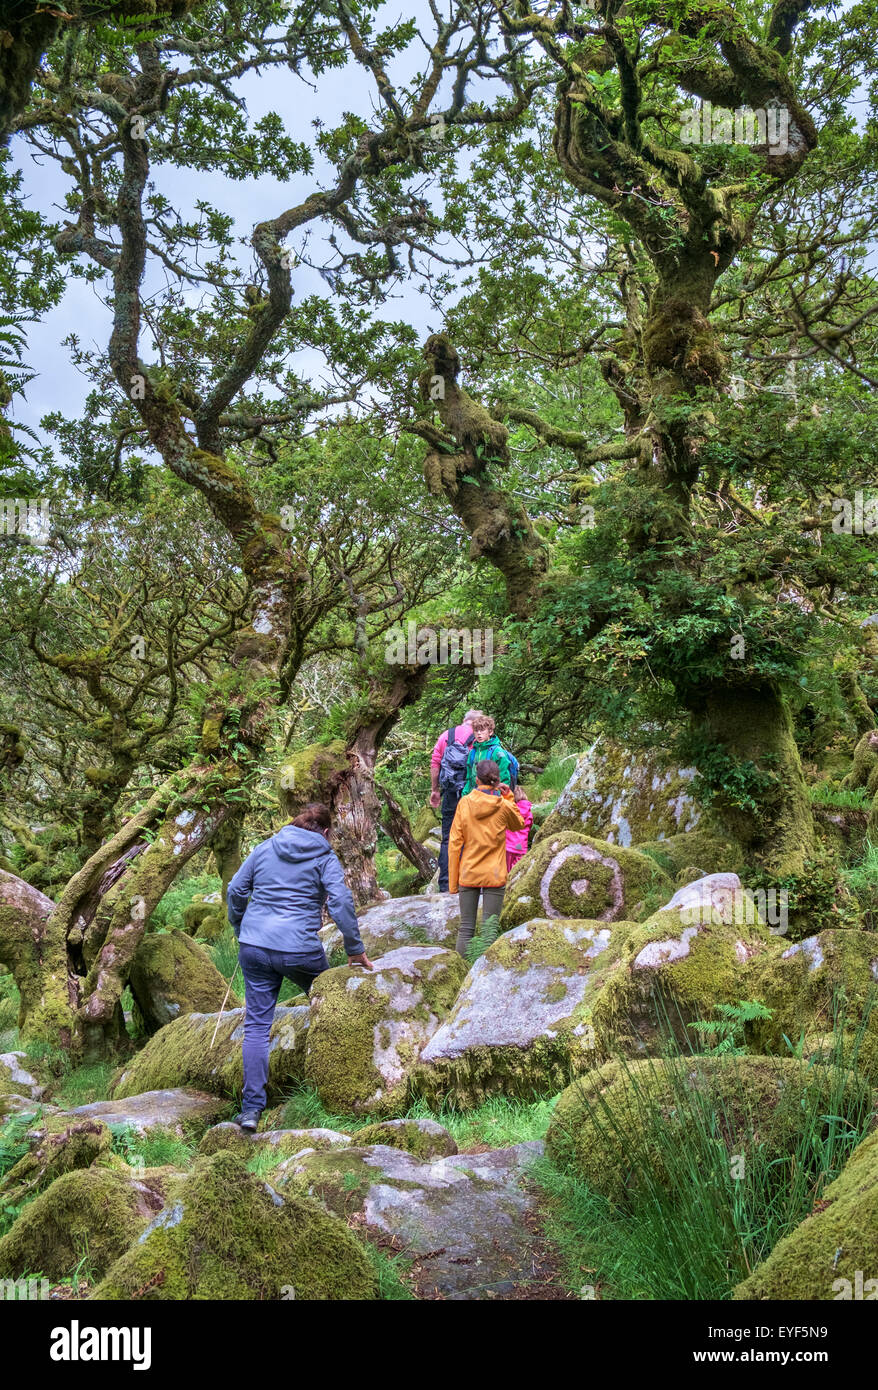 Une famille autour de Wistman's Wood, un haut-altitude oakwood (Quercus robur), près de deux ponts, Dartmoor, dans le Devon, England, UK Banque D'Images